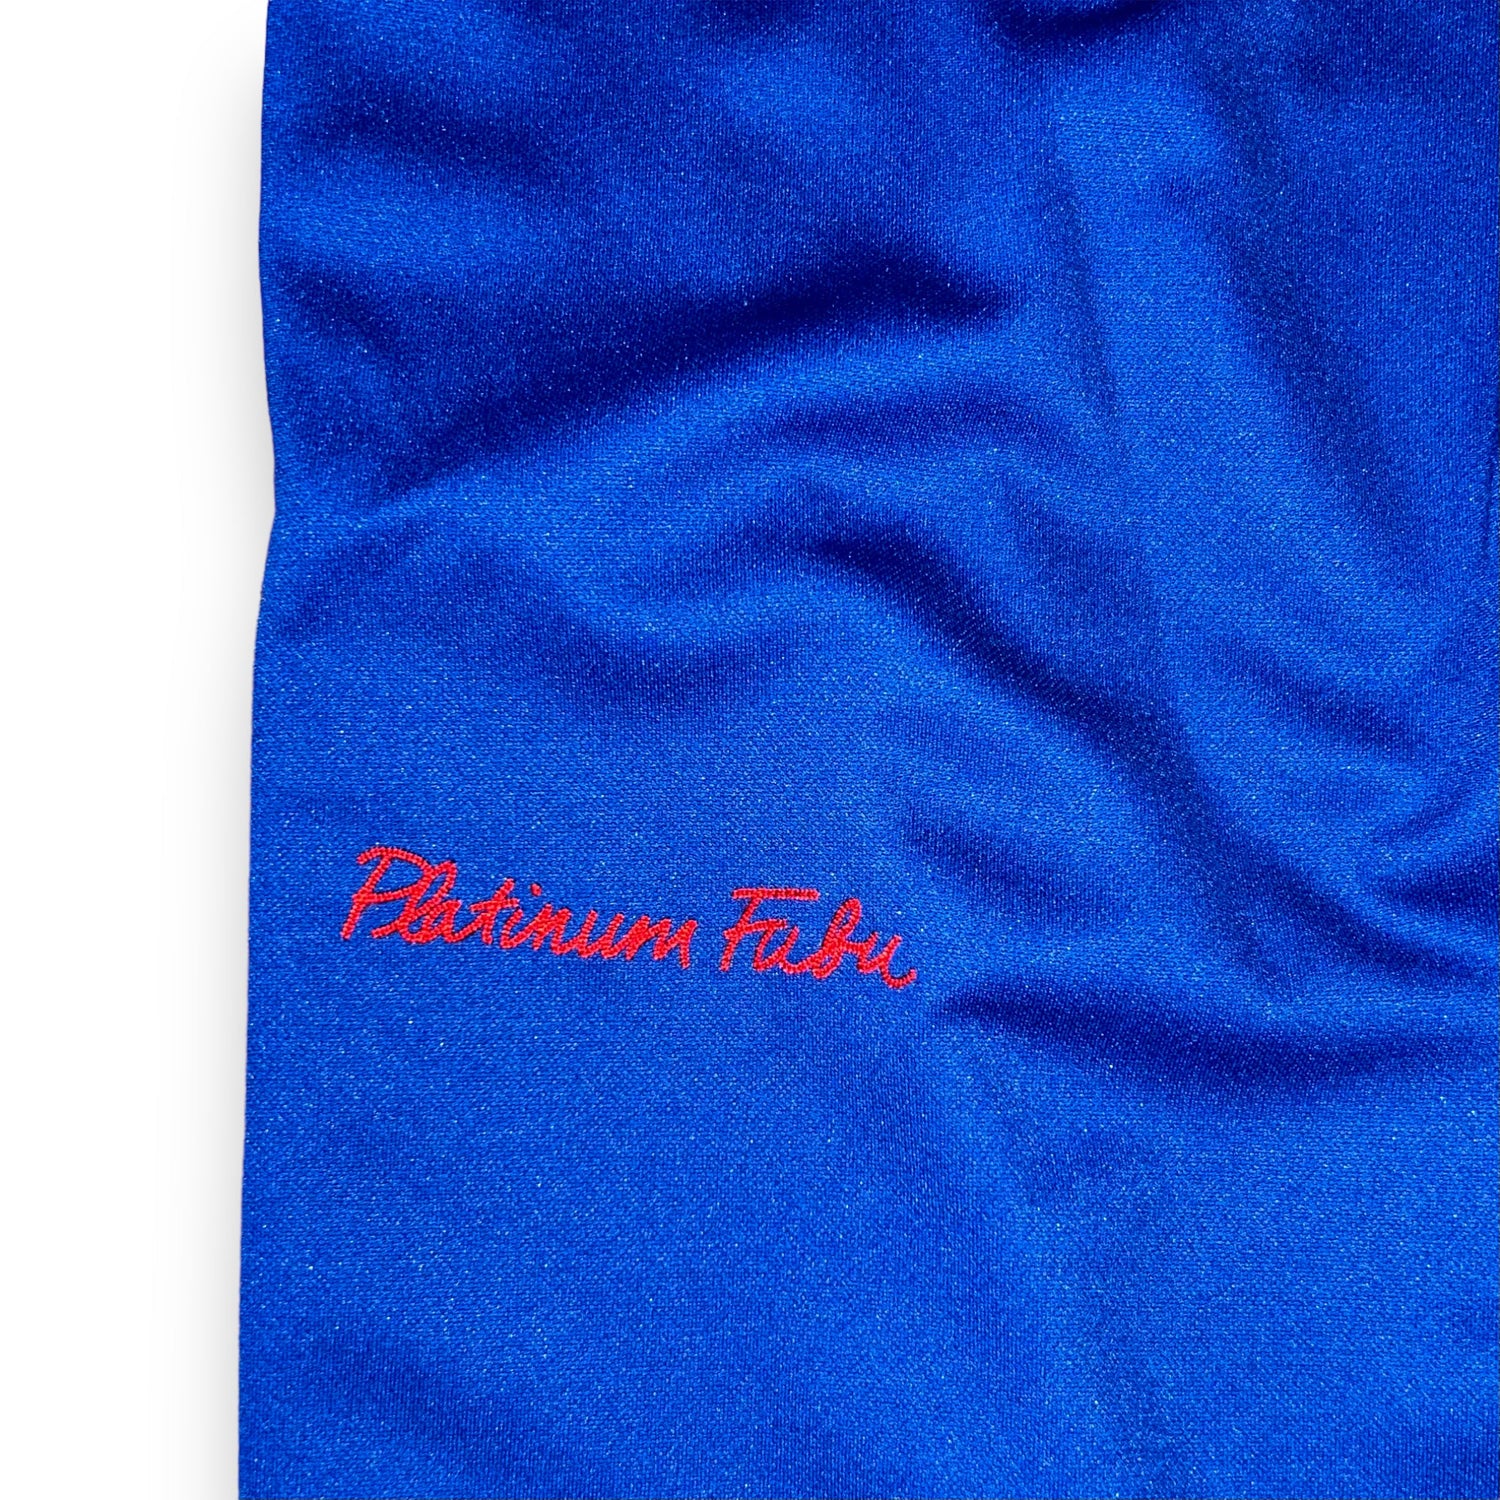 Platinum Fubu Harlem Globetrotters Vintage Pants (L)